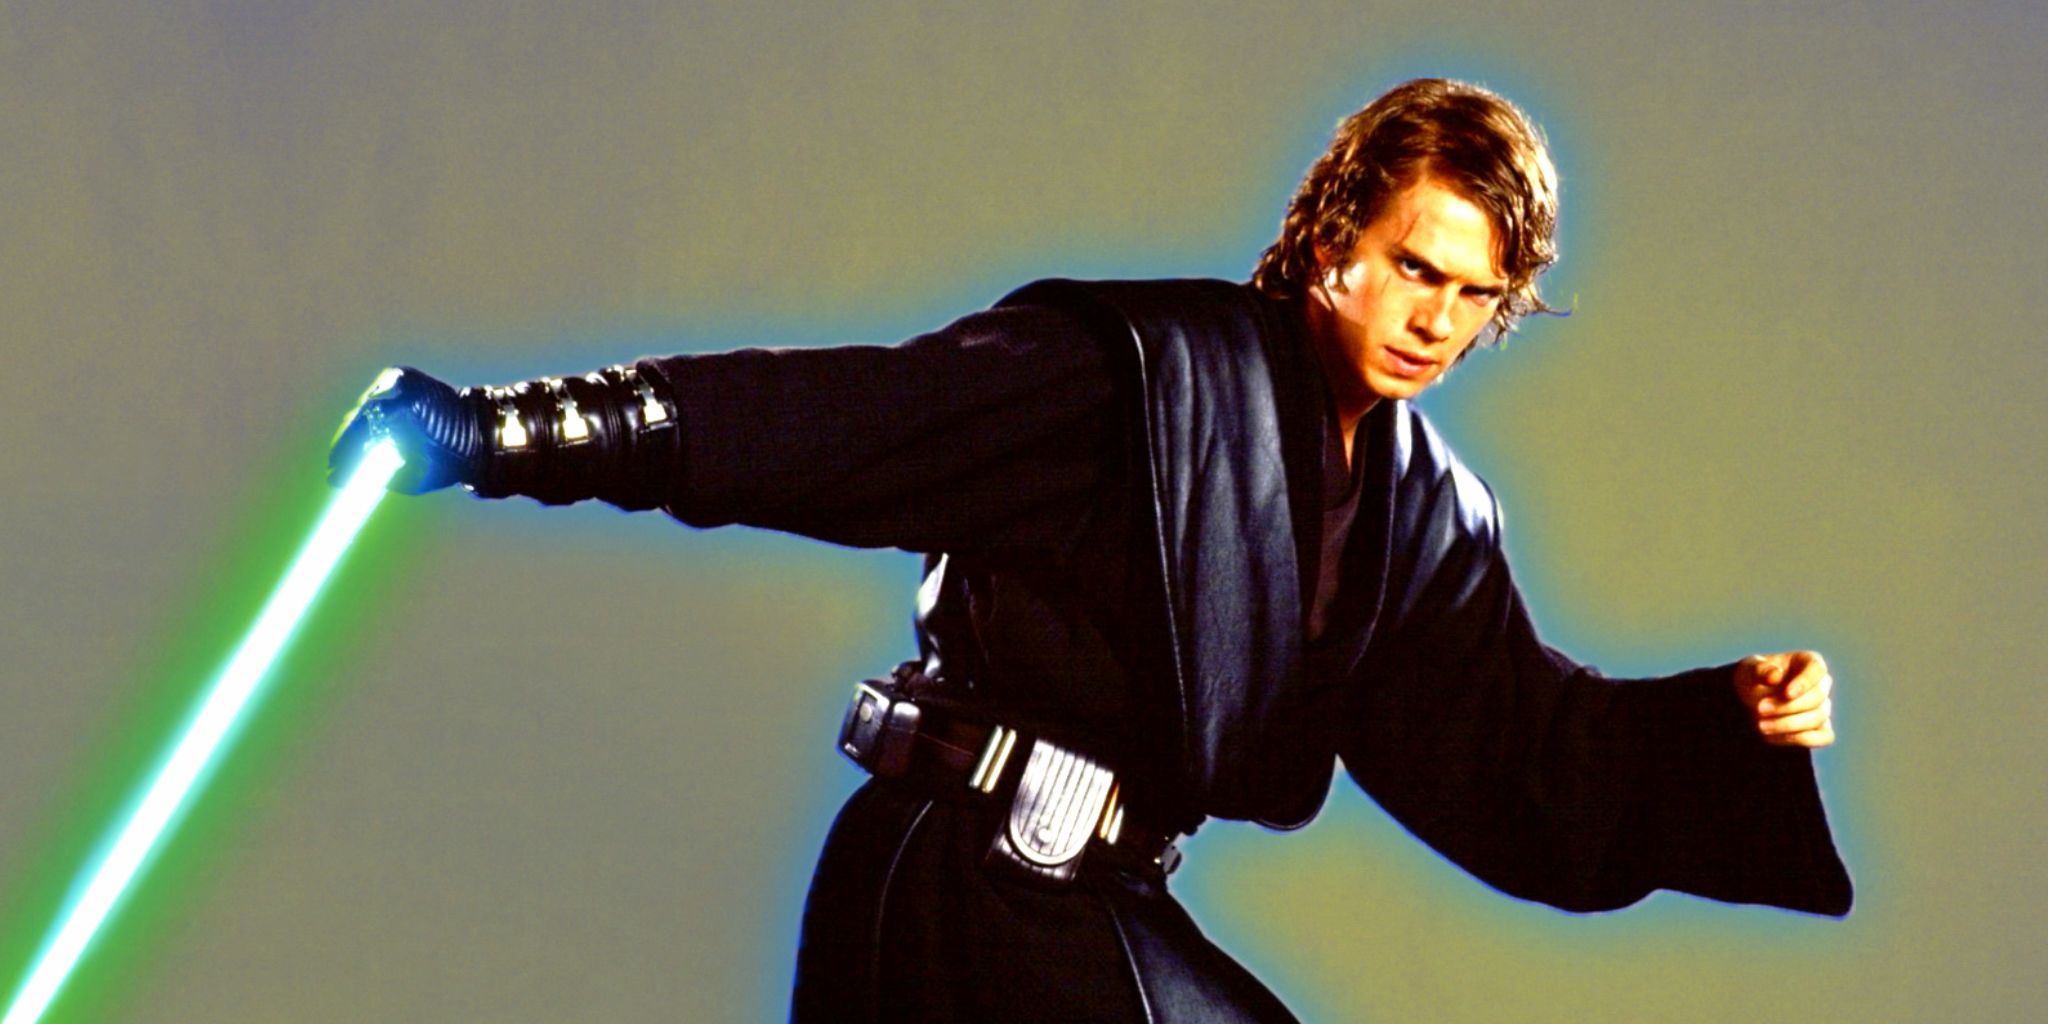 El sable de luz giratorio de Anakin Skywalker es demolido por auténticos expertos en lucha